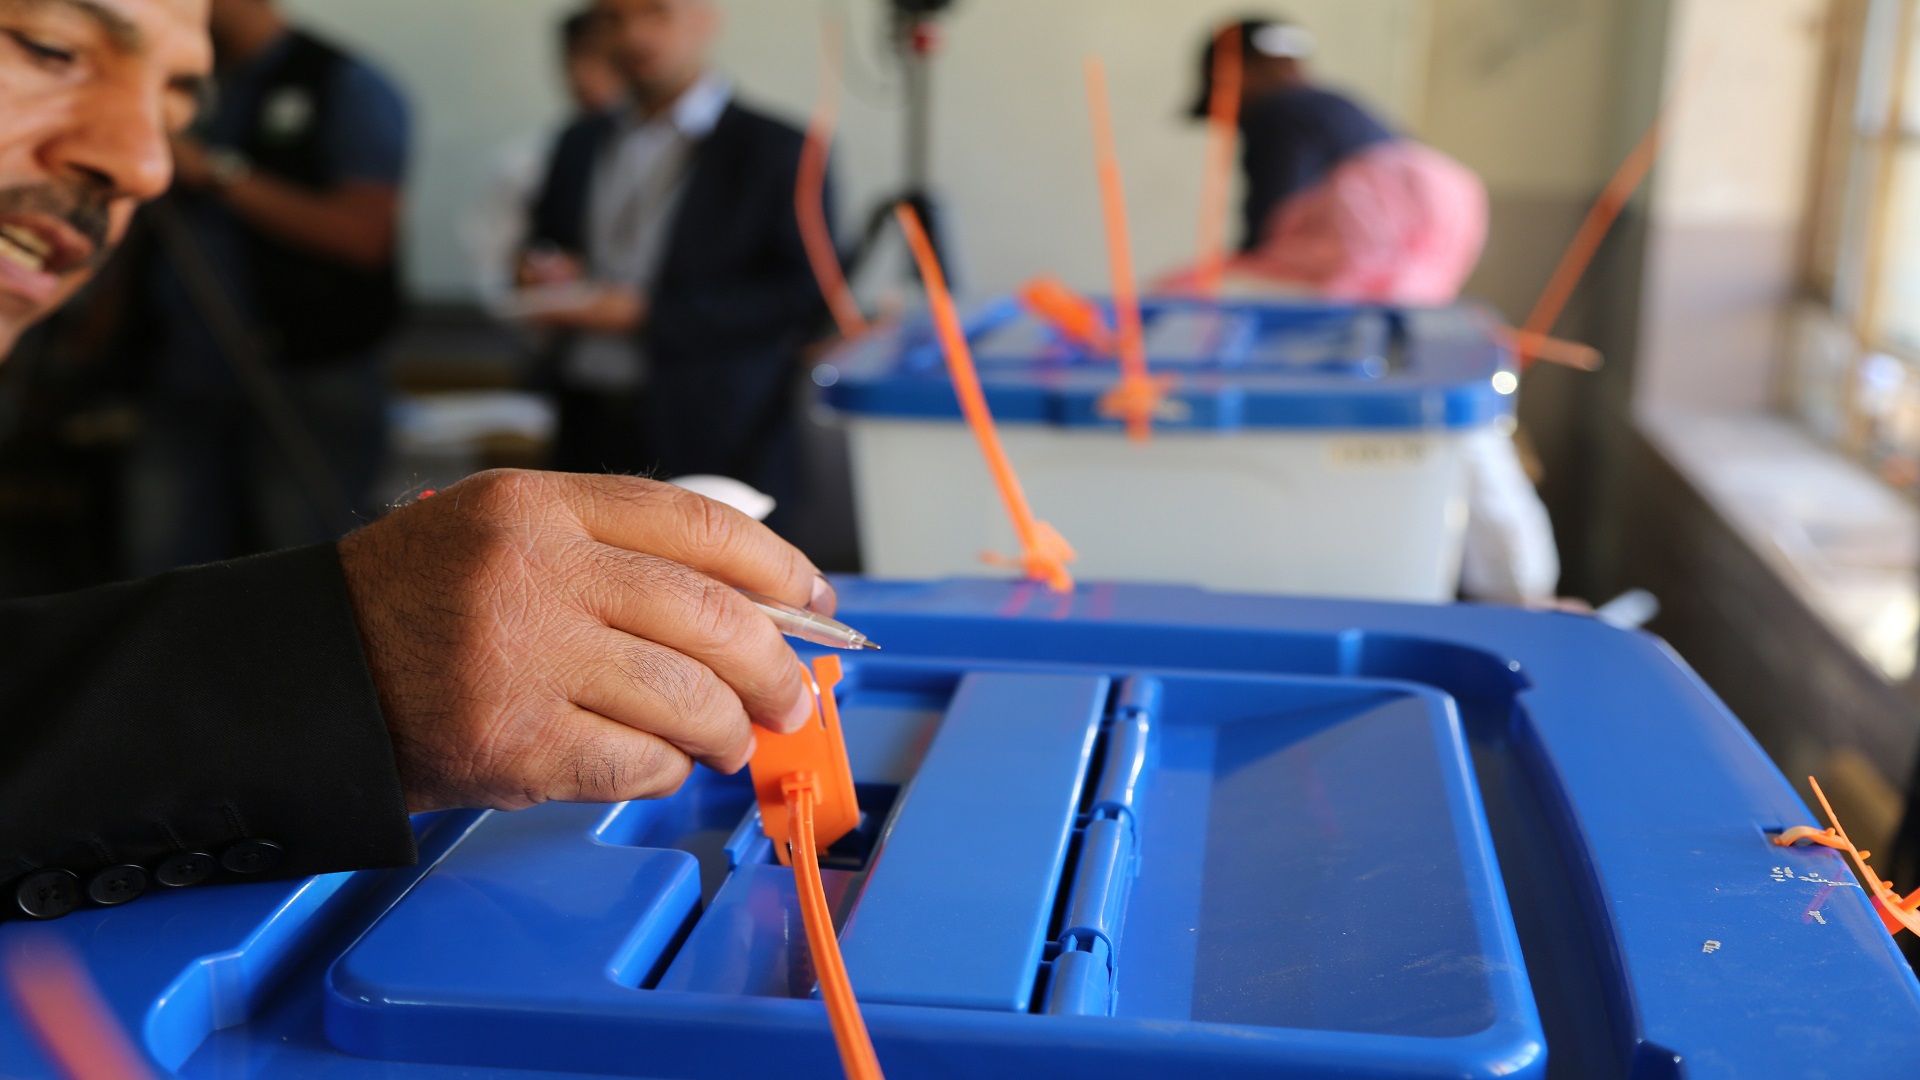 المحكمة الاتحادية العليا في العراق تصدر قرارات هامة حول الانتخابات